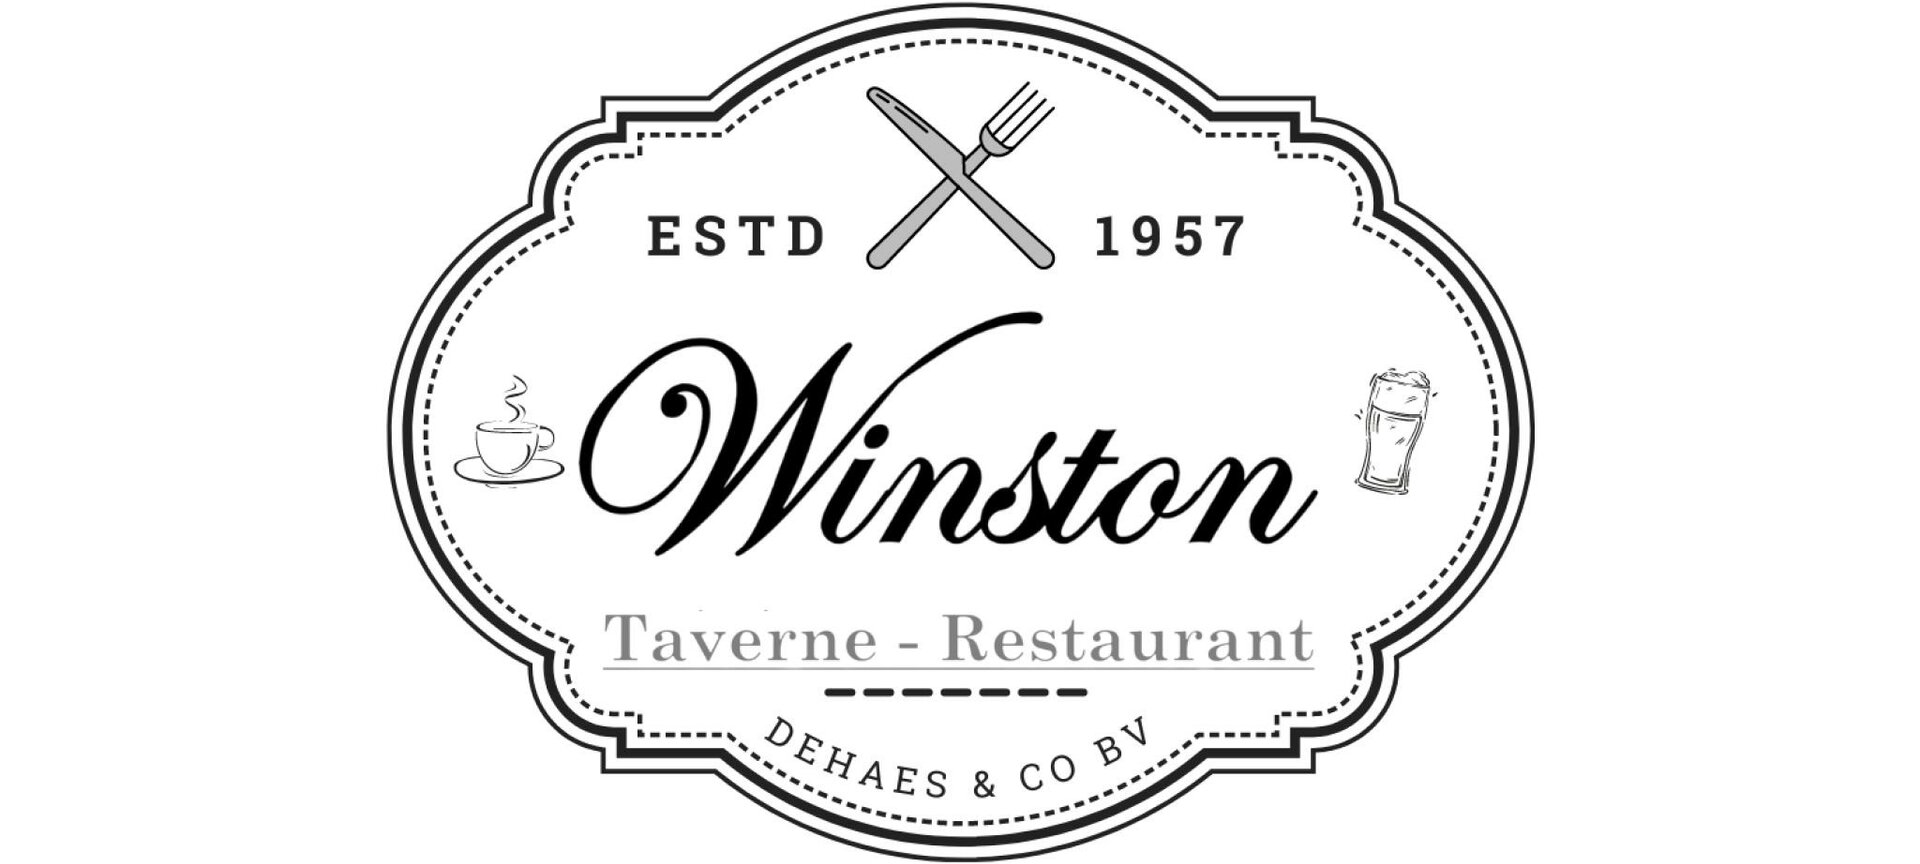 Taverne - Restaurant Winston - Logo